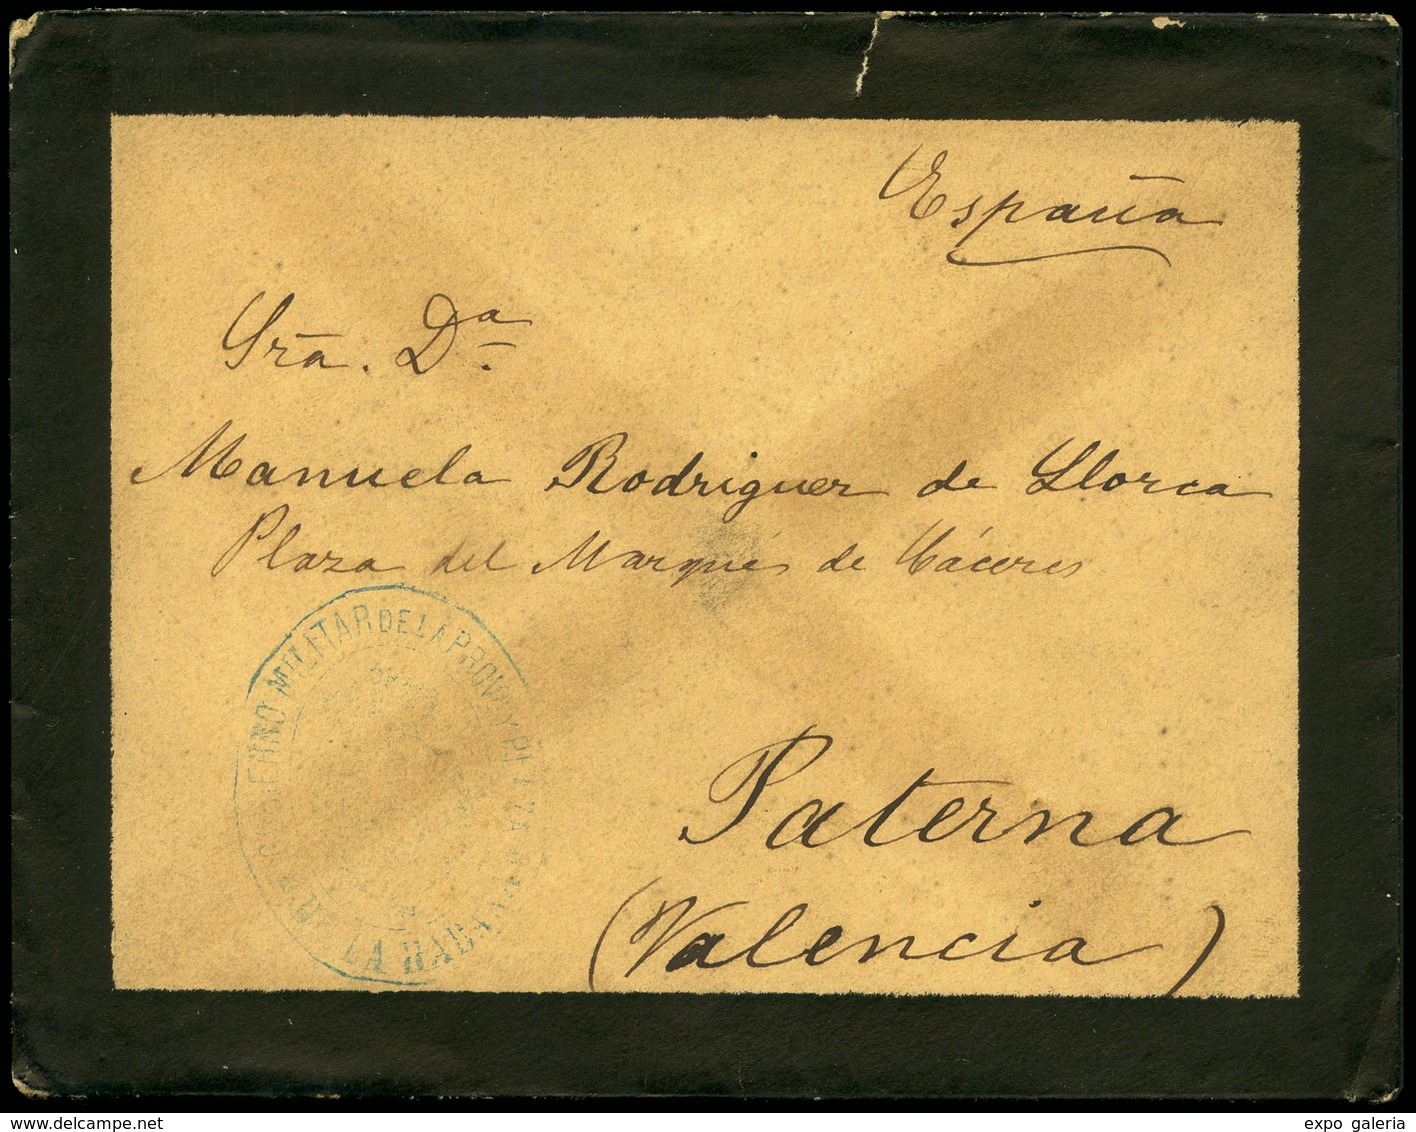 1064 1898. Guerra De Cuba. Carta Cda De Cuba A Paterna (Valencia) Con Marca Franquicia Militar - Cuba (1874-1898)